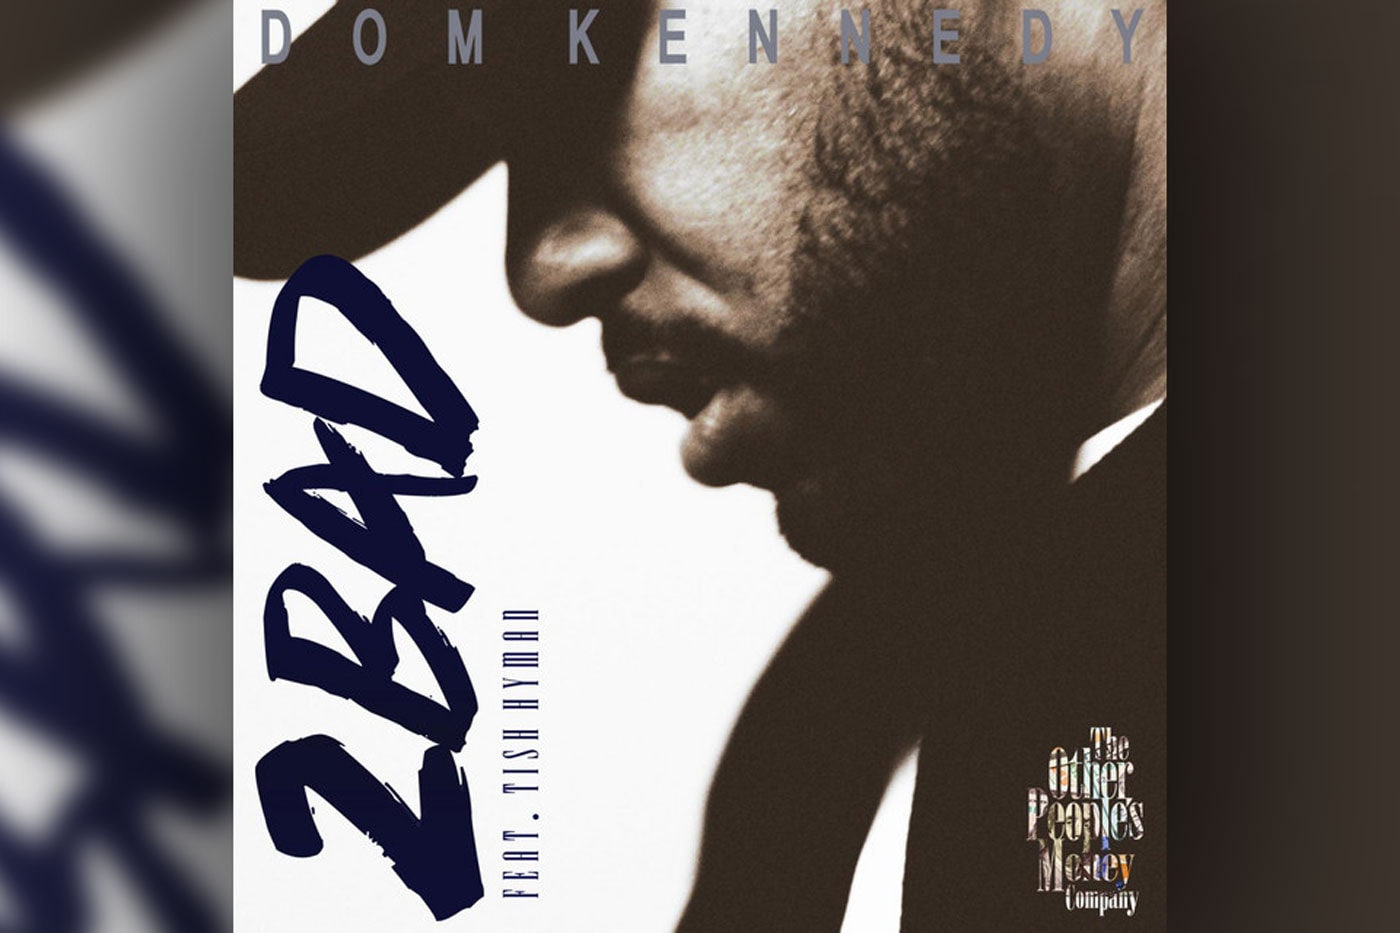 Dom Kennedy featuring Tish Hyman - 2 Bad